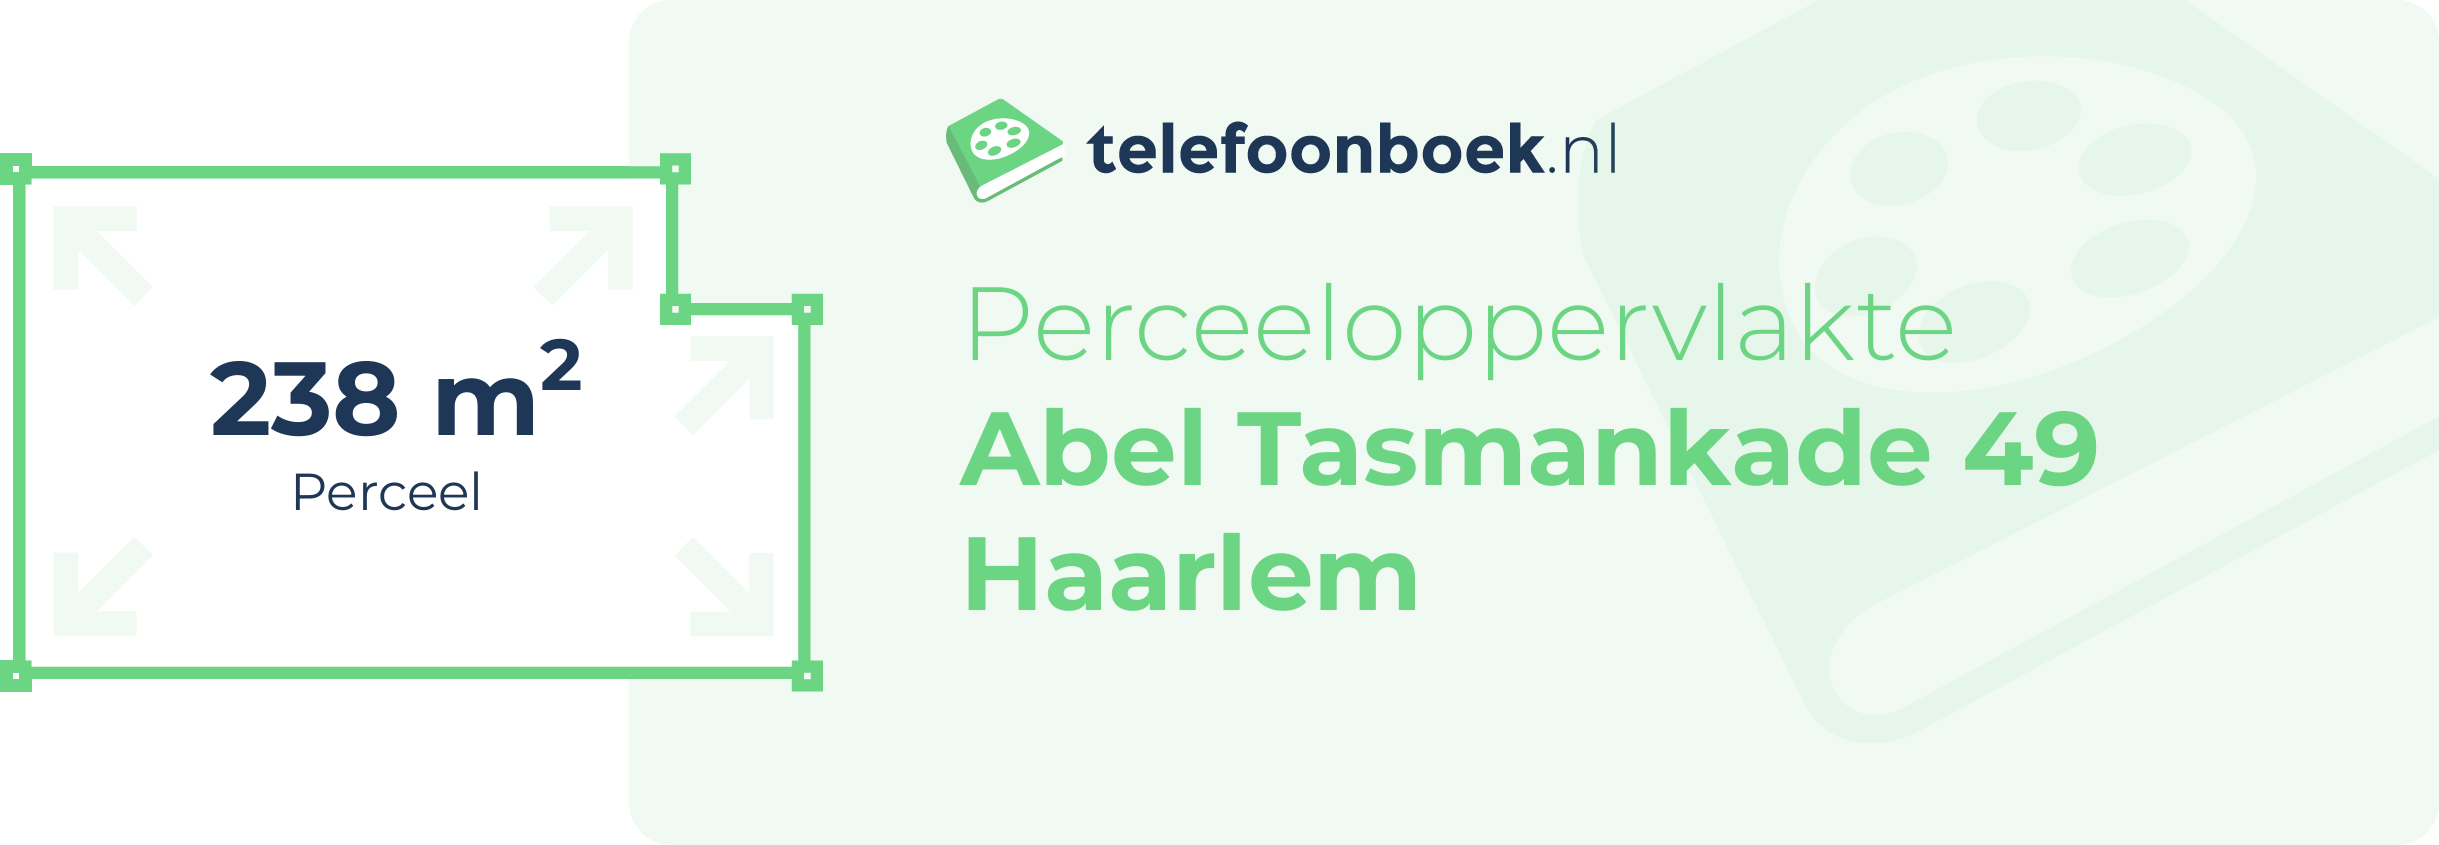 Perceeloppervlakte Abel Tasmankade 49 Haarlem